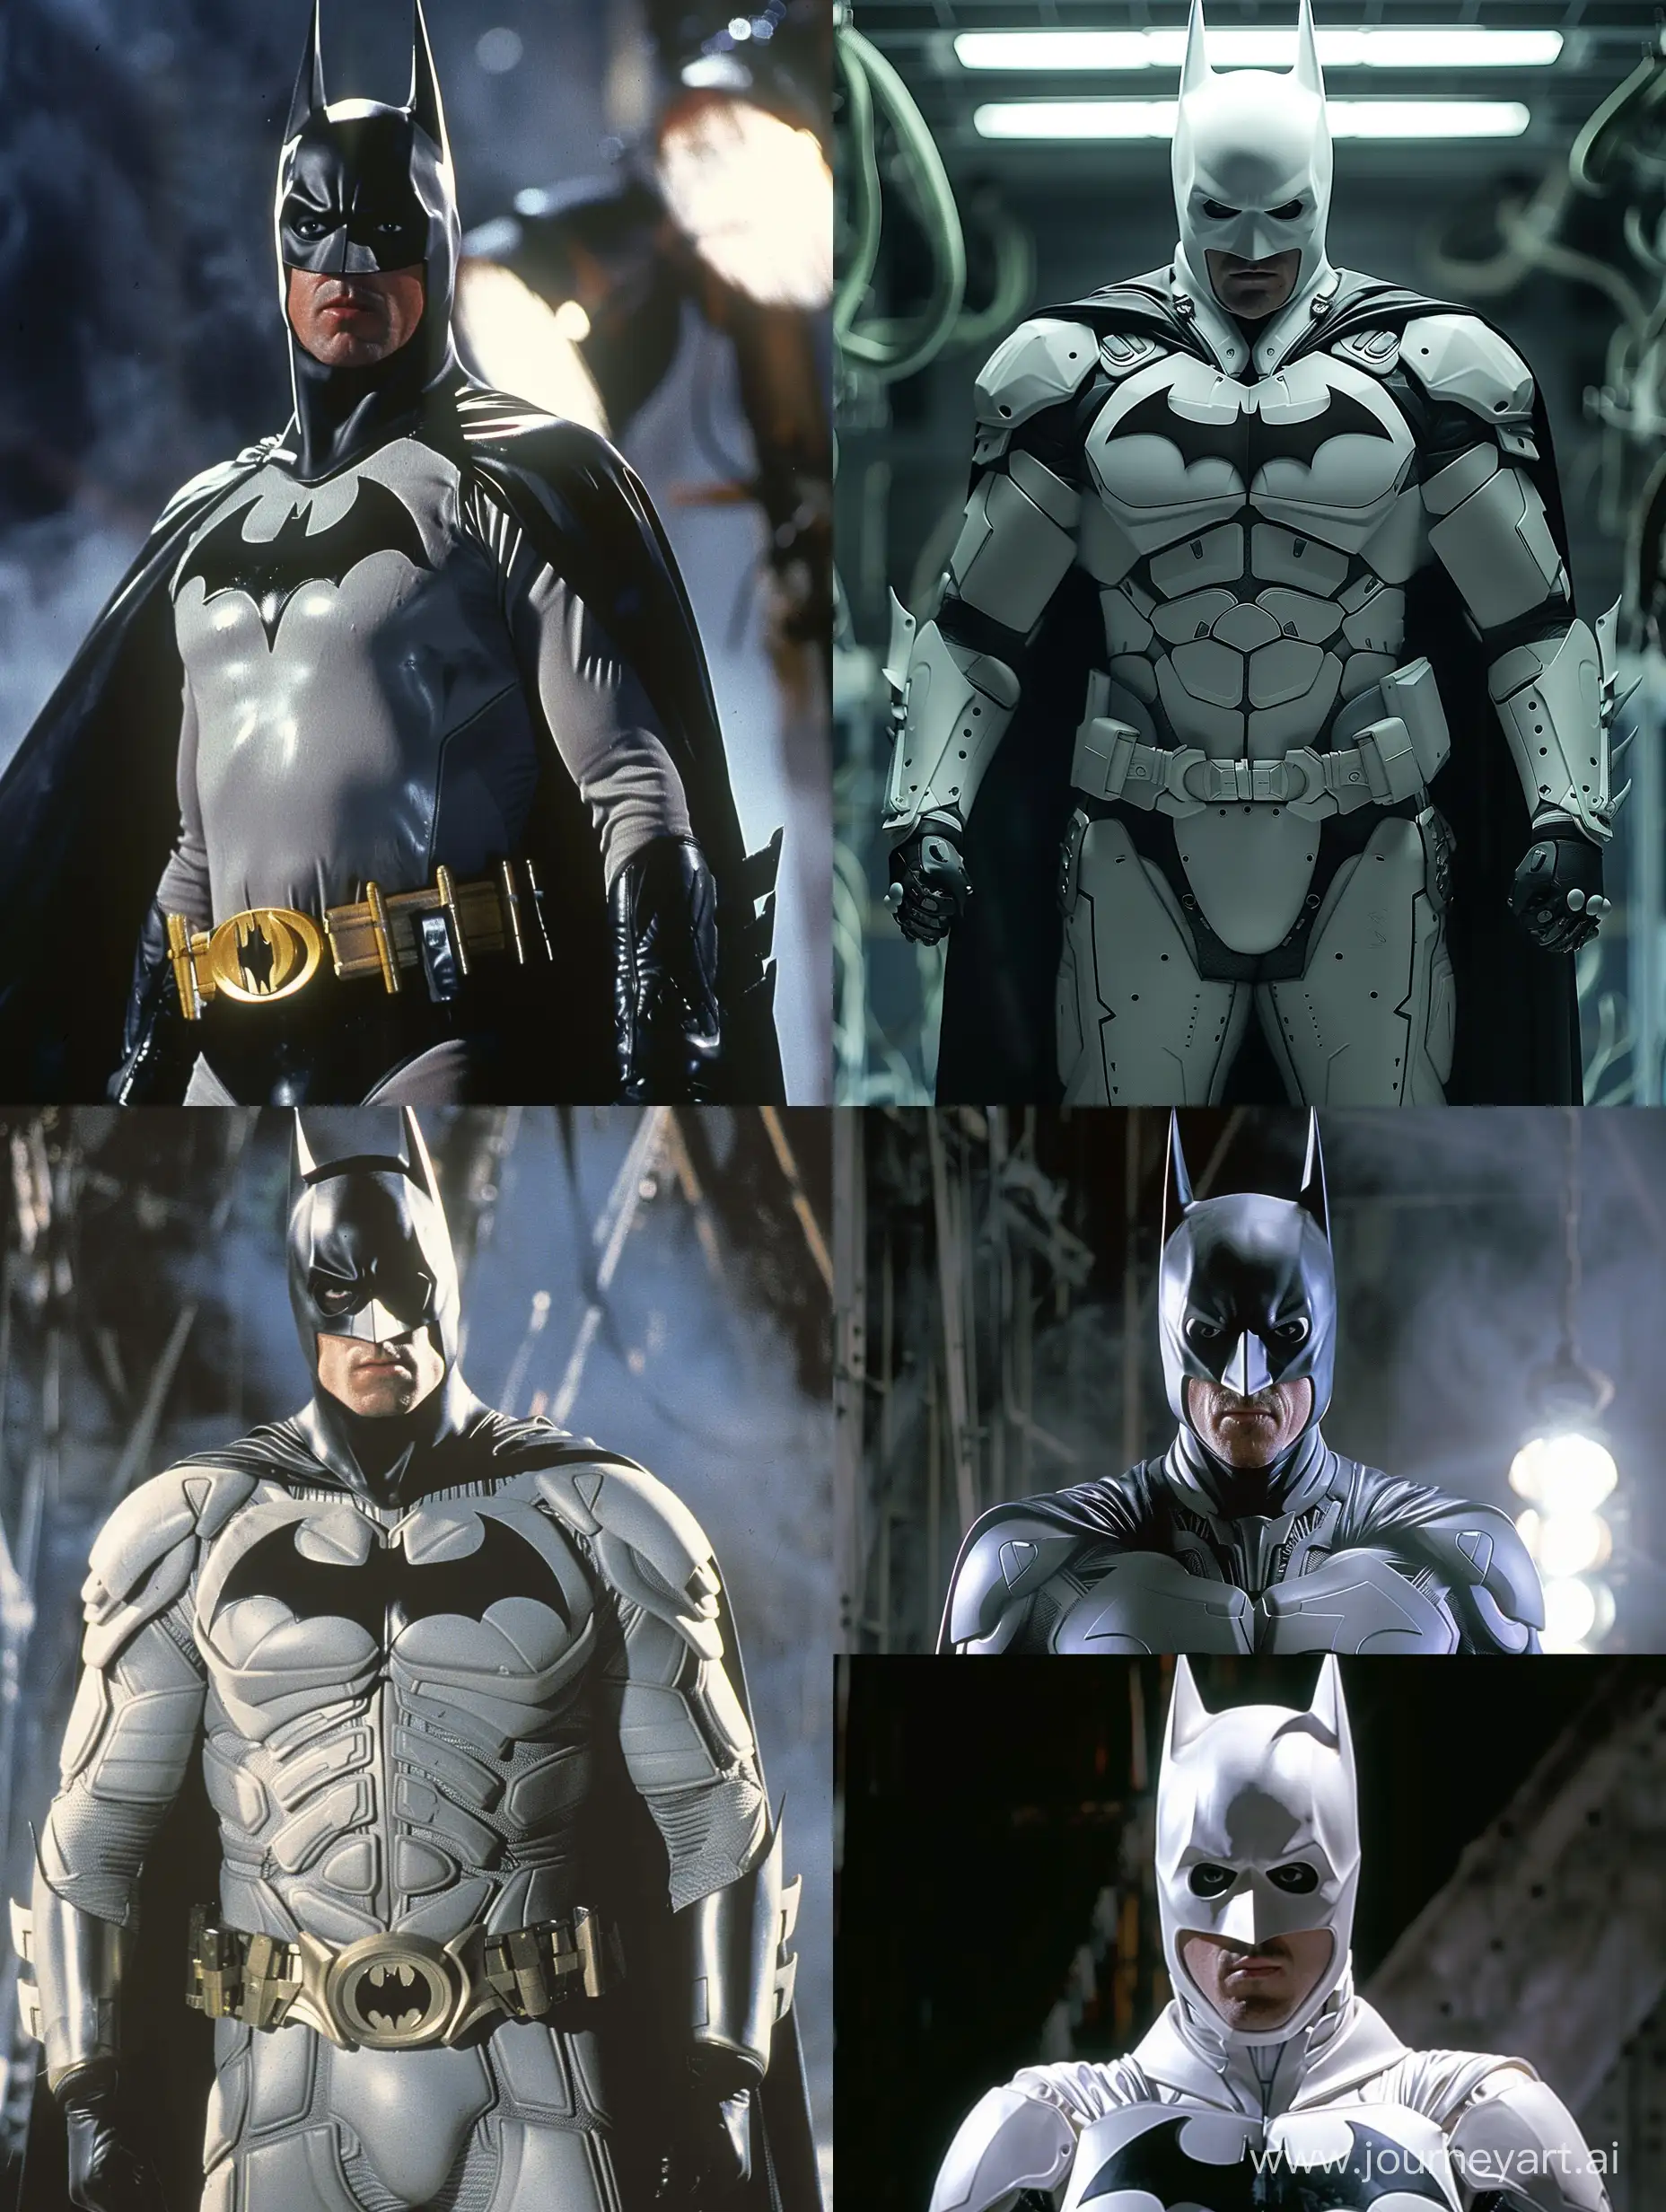 Christian-Bale-as-Batman-in-White-Suit-1990s-Retro-Style-Portrait